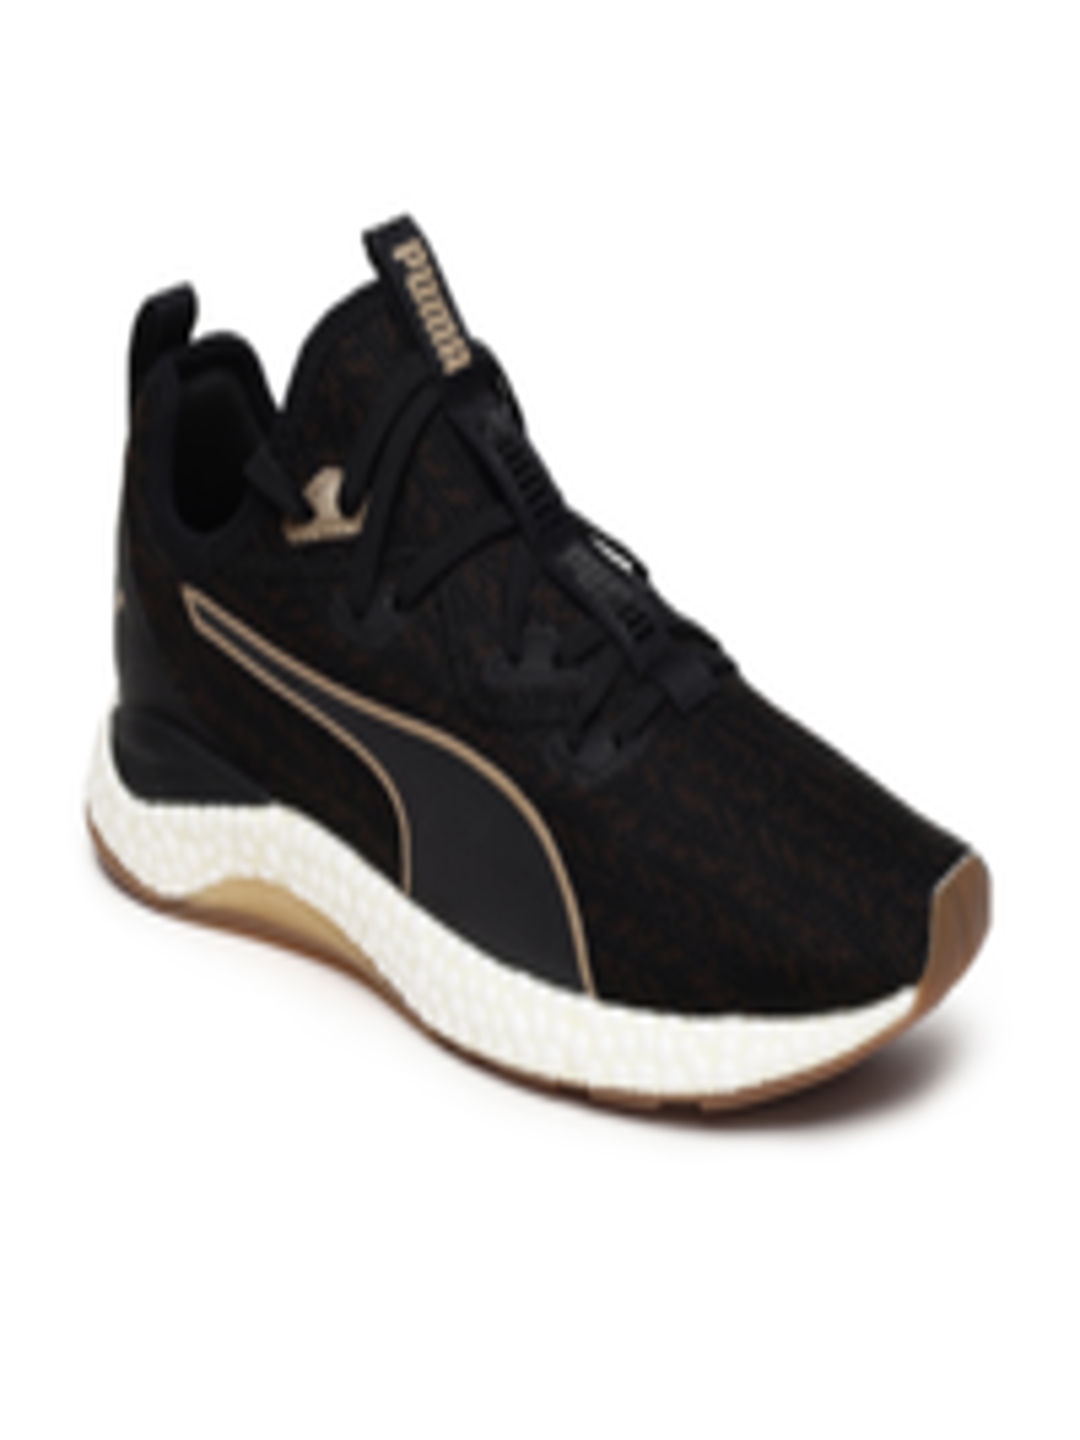 Buy Puma Men Black Hybrid Runner Desert Running Shoes - Sports Shoes ...